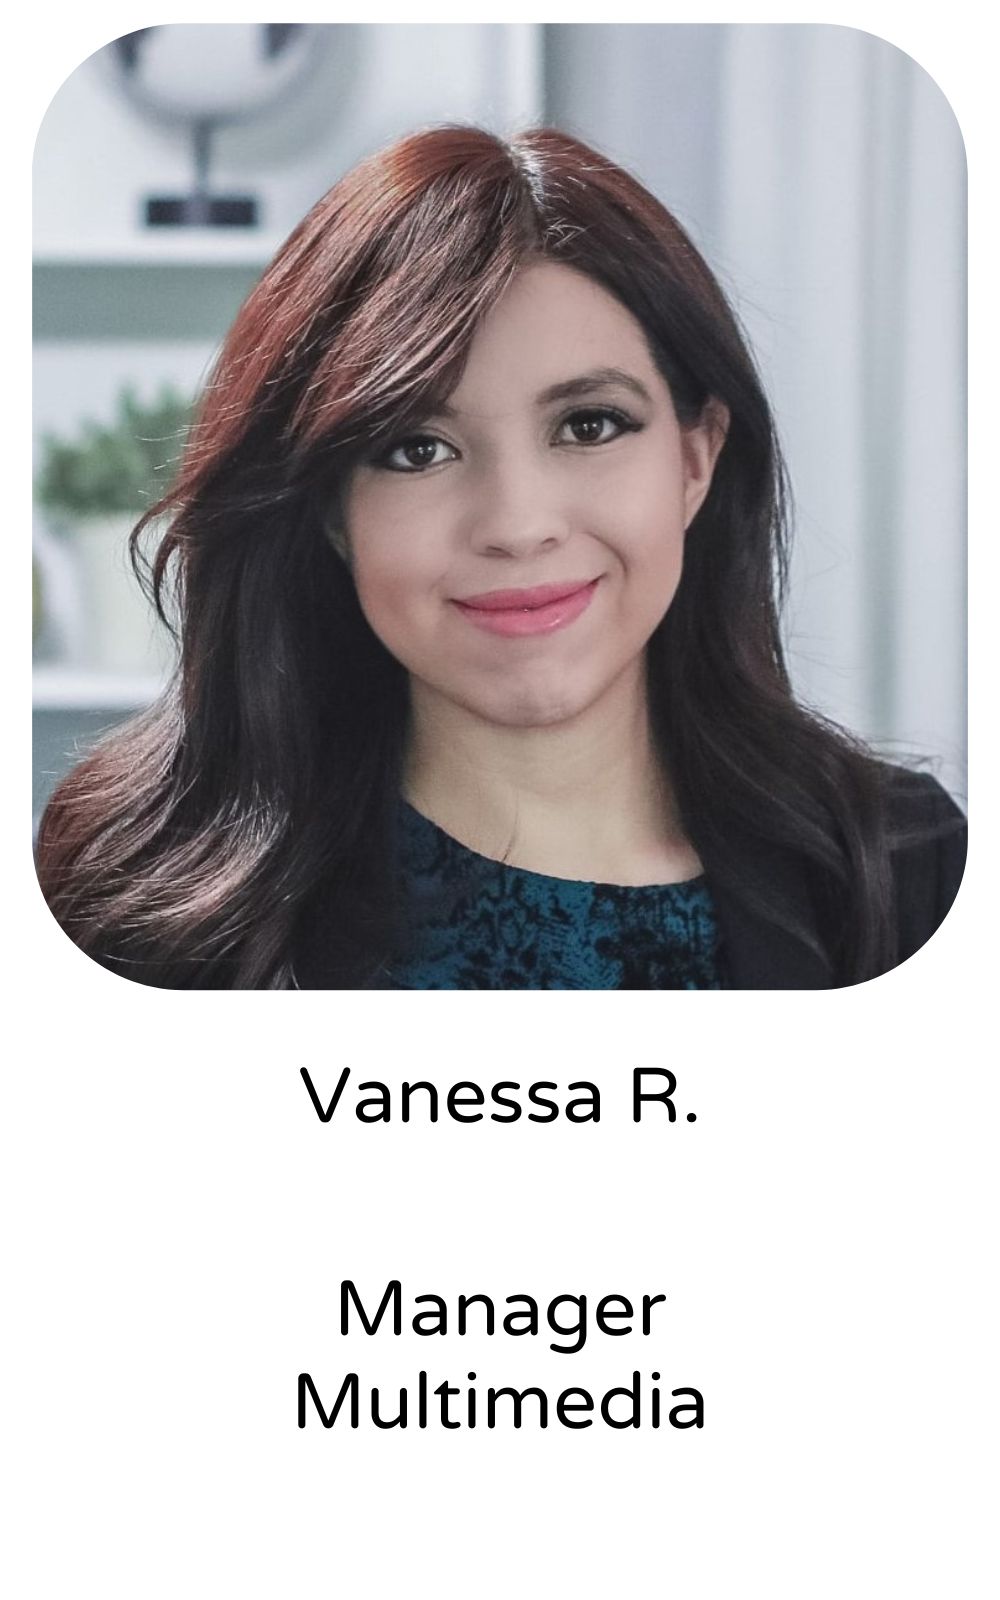 Vanessa R, Manager, Multimedia